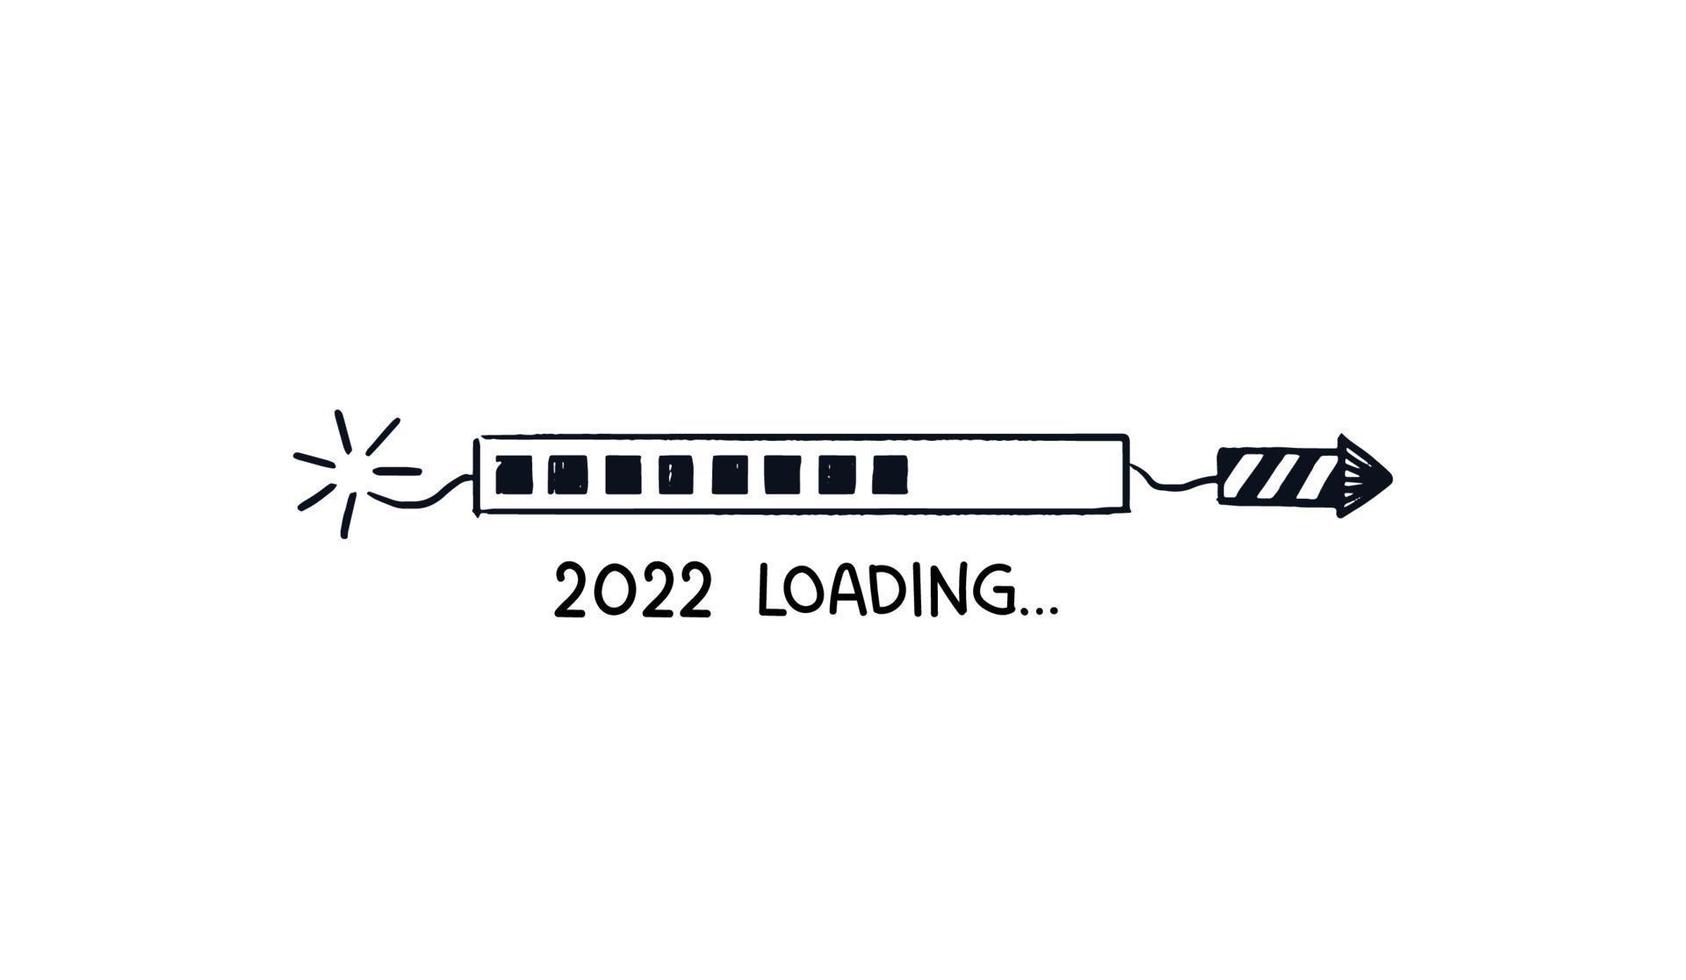 2022 Raketenladebalken. doodle download bar bemalter gestreifter kracher mit spitzer spitze. Vektor handgezeichnete Skizze mit Zitat von unten isoliert auf weißem Hintergrund.